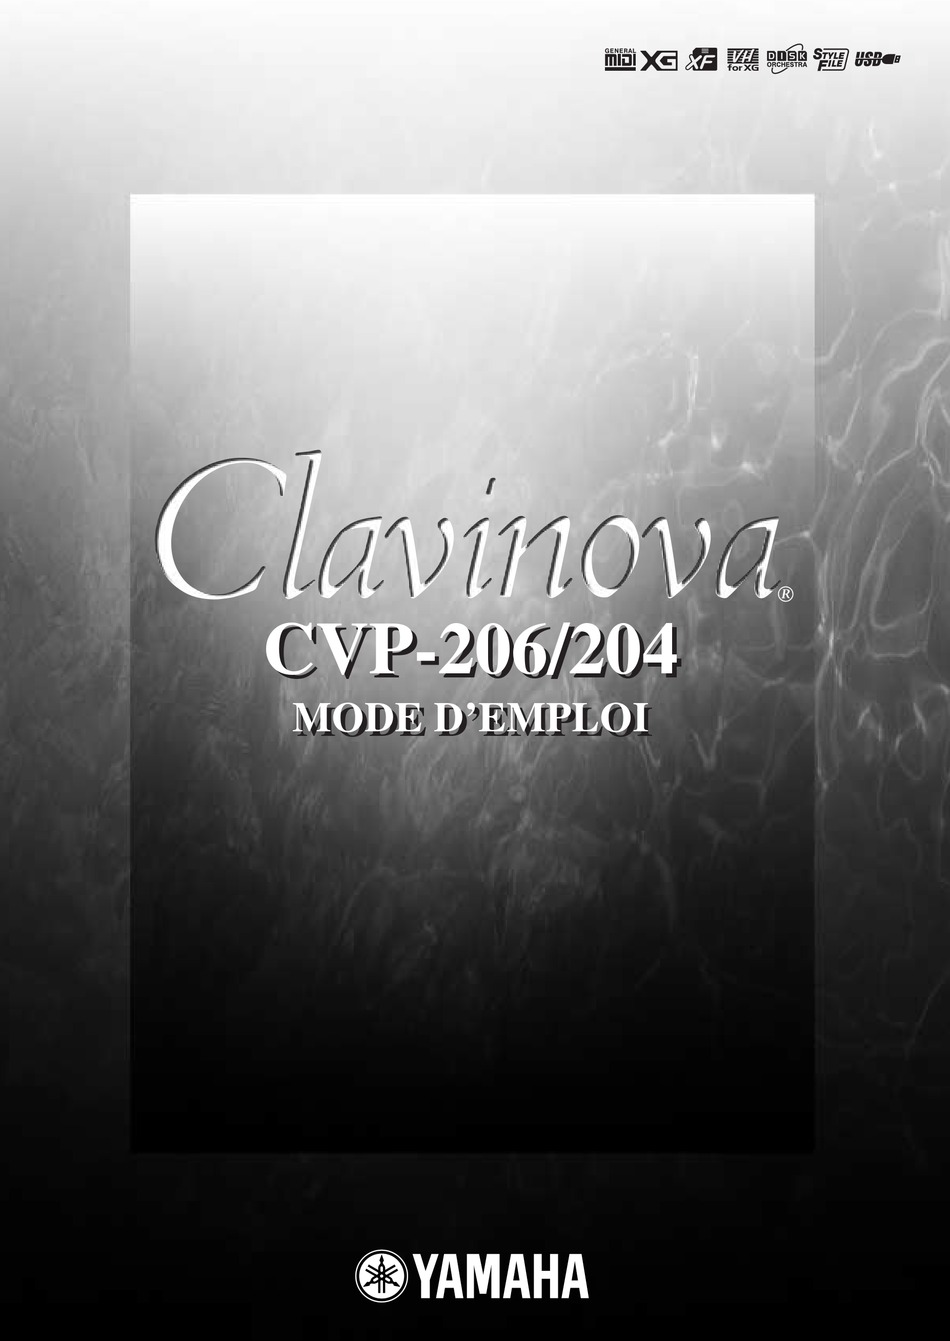 YAMAHA CLAVINOVA CVP-206/204 MODE D'EMPLOI Pdf Download | ManualsLib